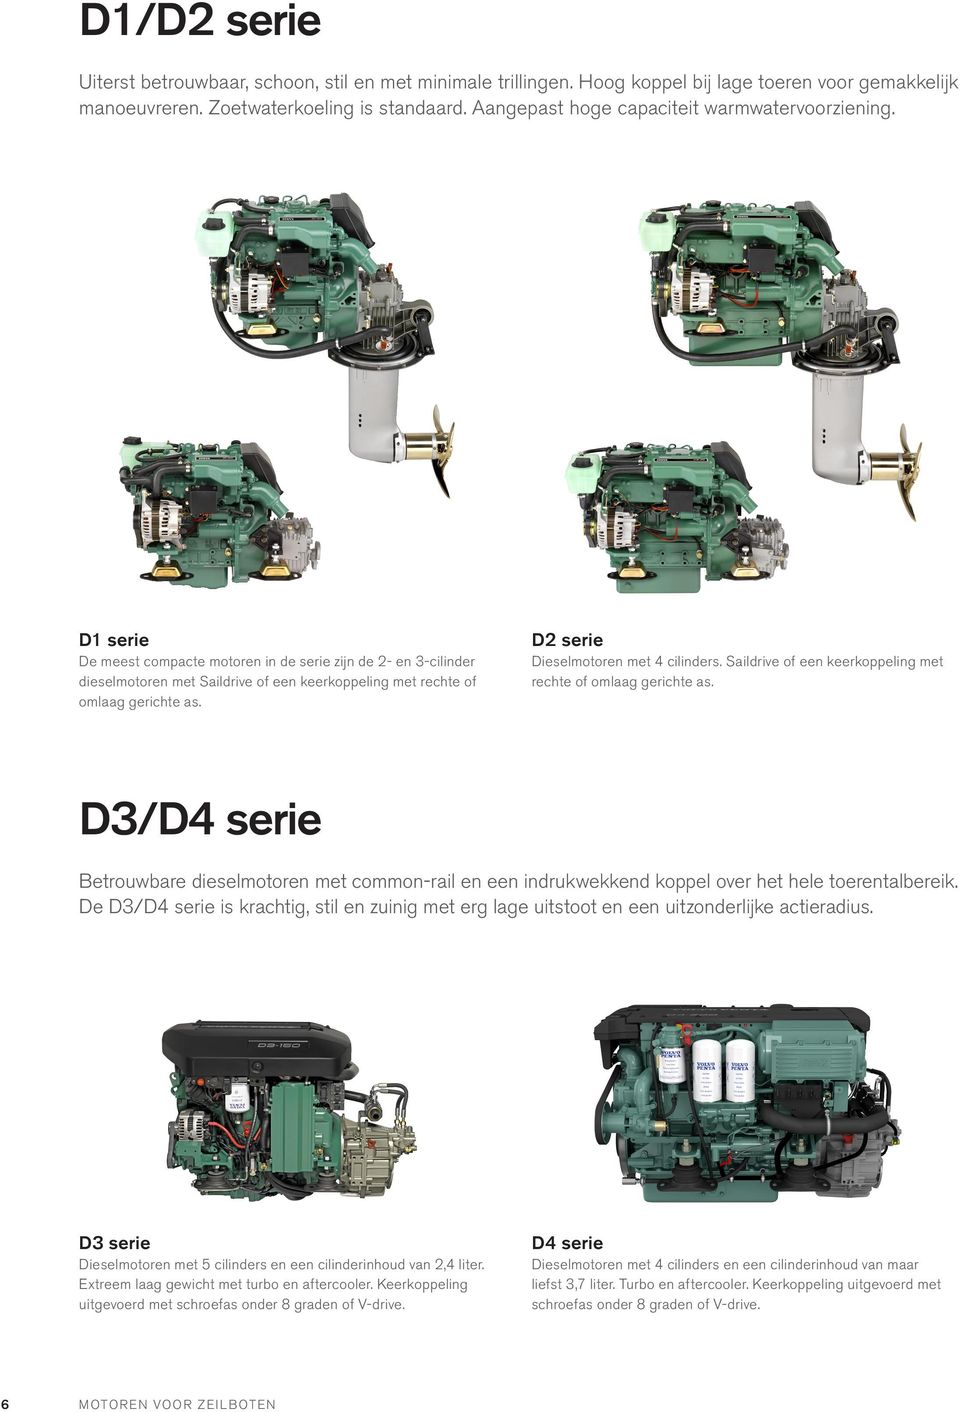 D1 serie De meest compacte motoren in de serie zijn de 2- en 3-cilinder dieselmotoren met Saildrive of een keerkoppeling met rechte of omlaag gerichte as. D2 serie Dieselmotoren met 4 cilinders.